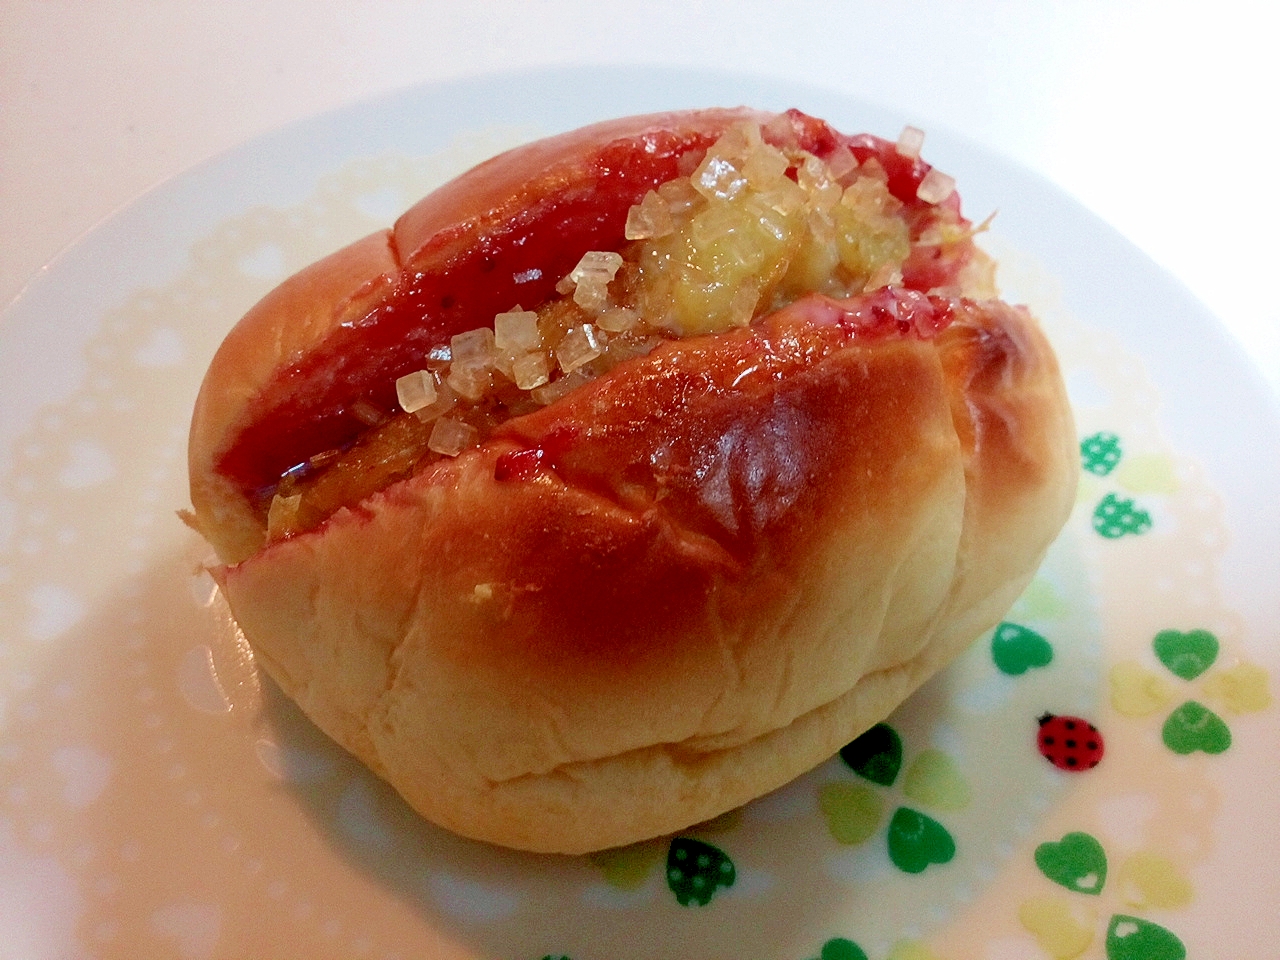 苺ジャムと焼き芋のロールパン